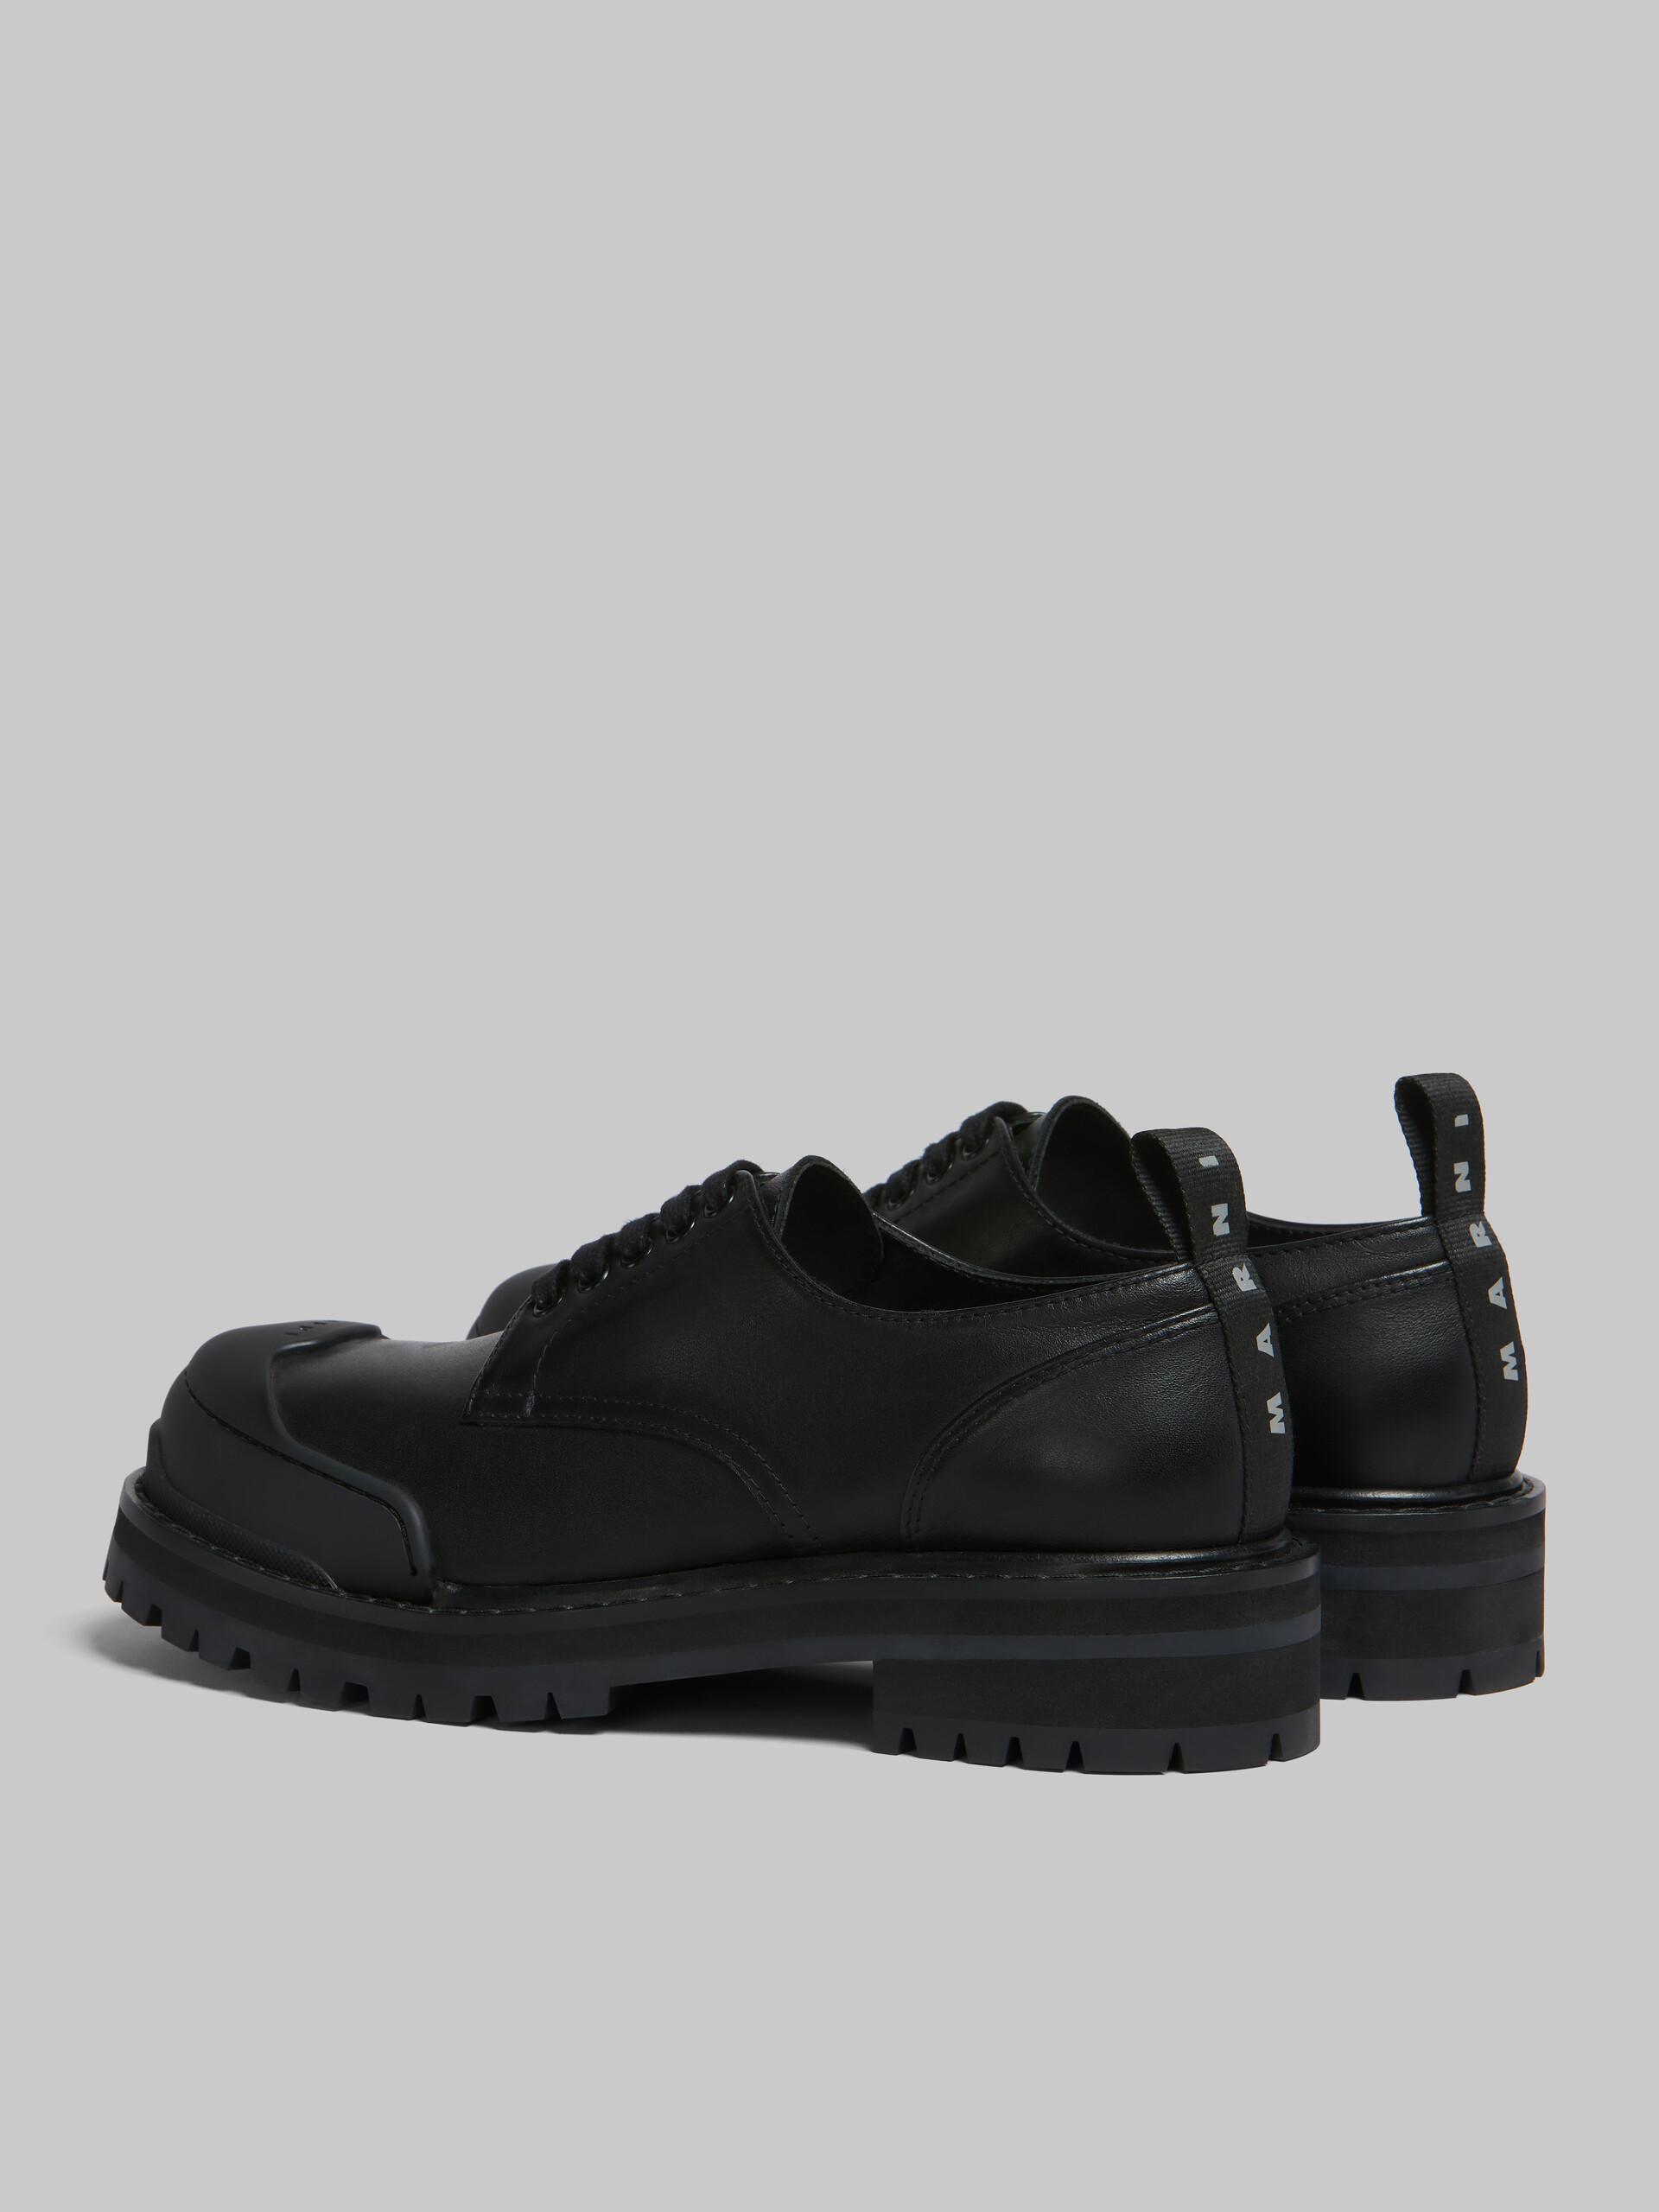 Zapato Derby Dada Army de piel negra - Zapatos con cordones - Image 3